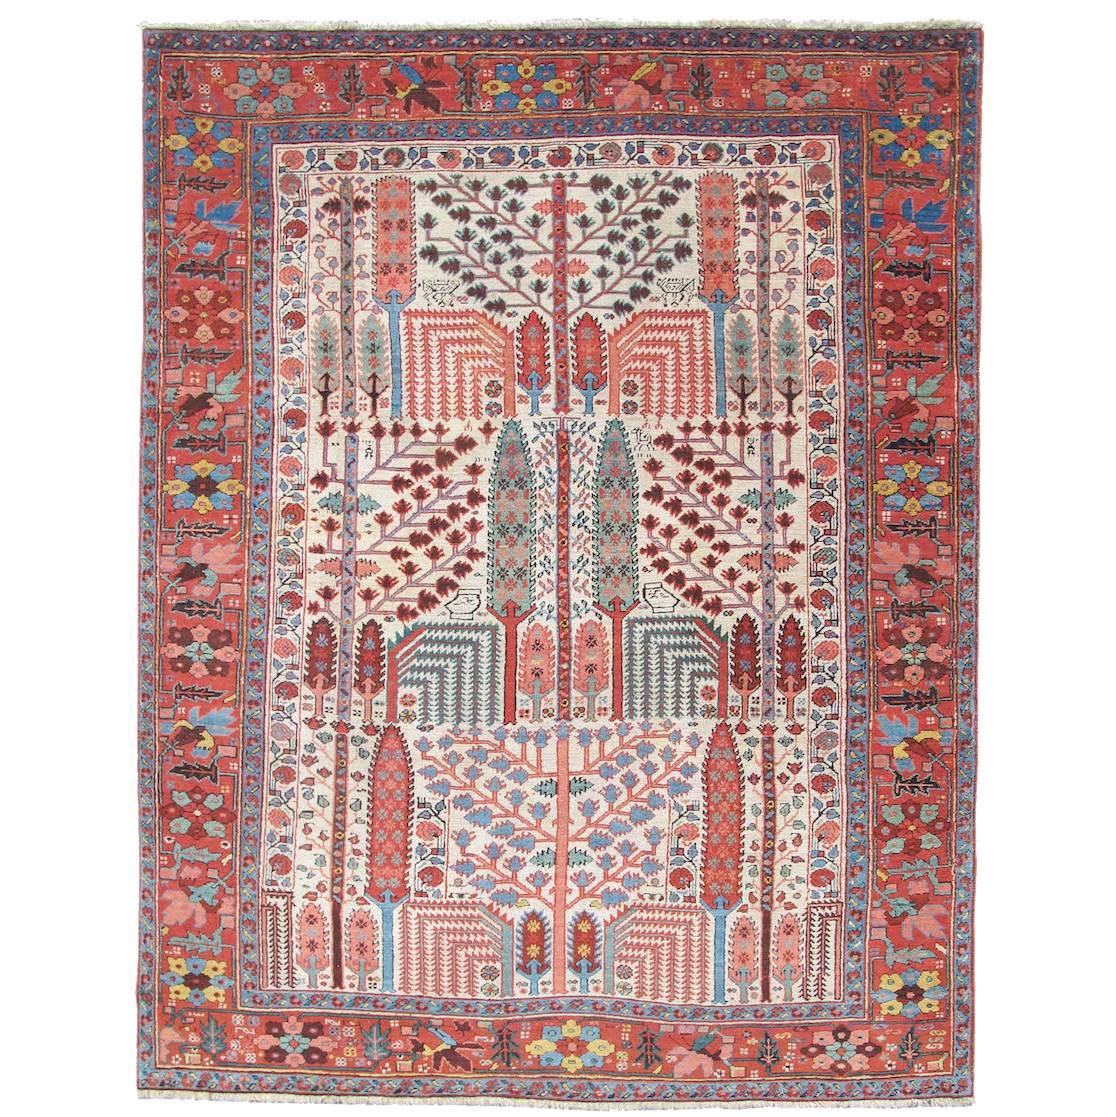 Late 19th Century Colorful Bakhshaish Rug 